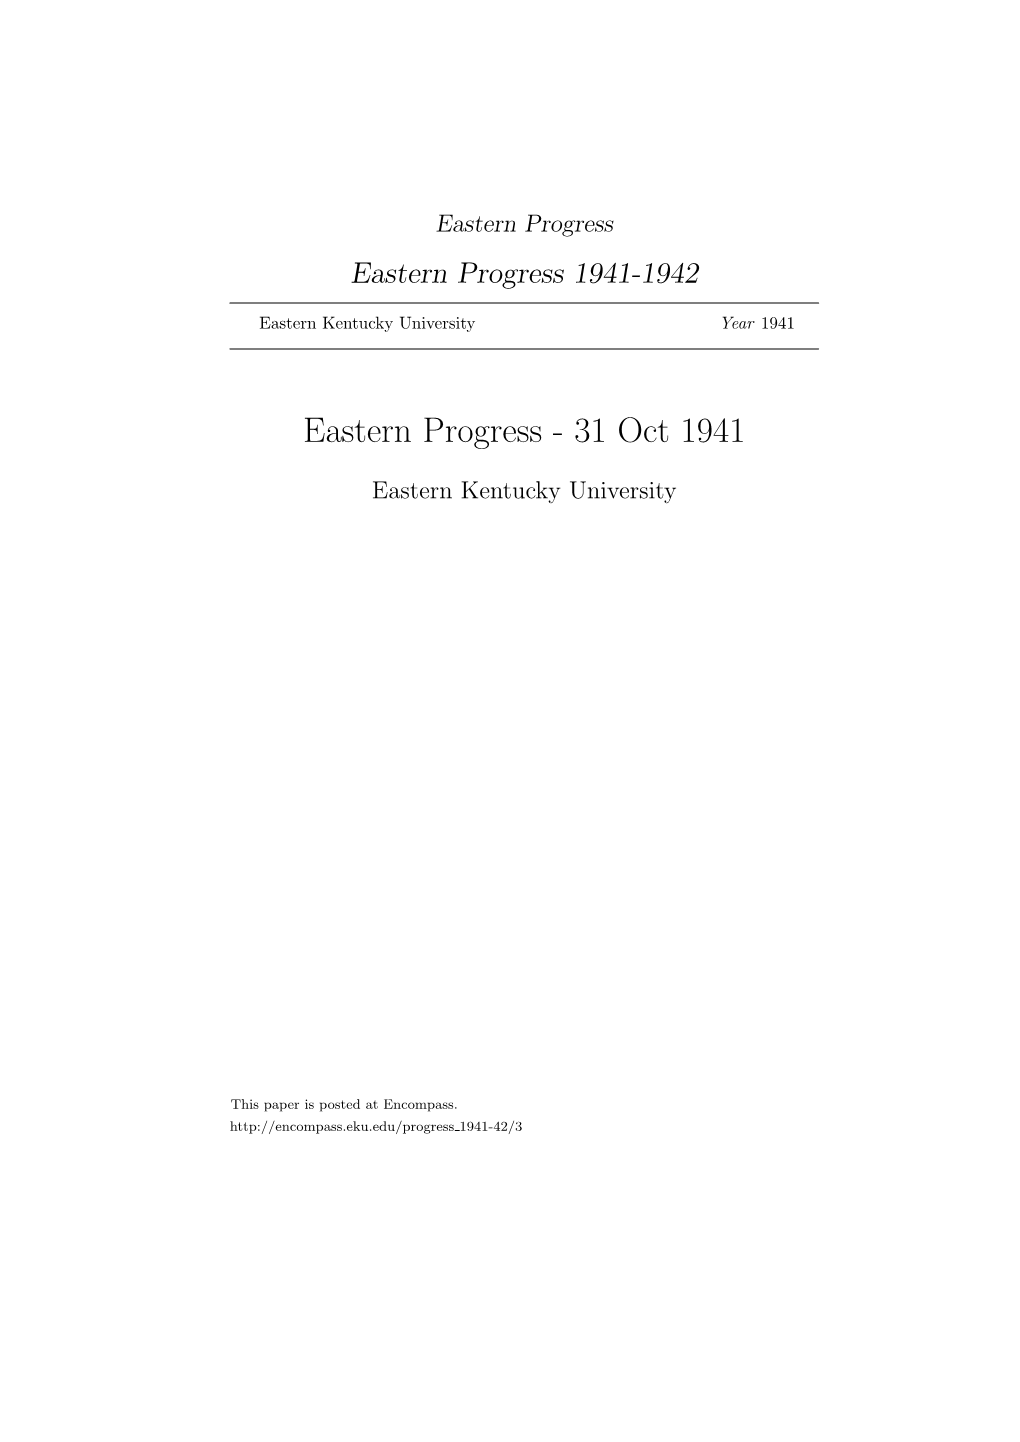 Eastern Progress Eastern Progress 1941-1942